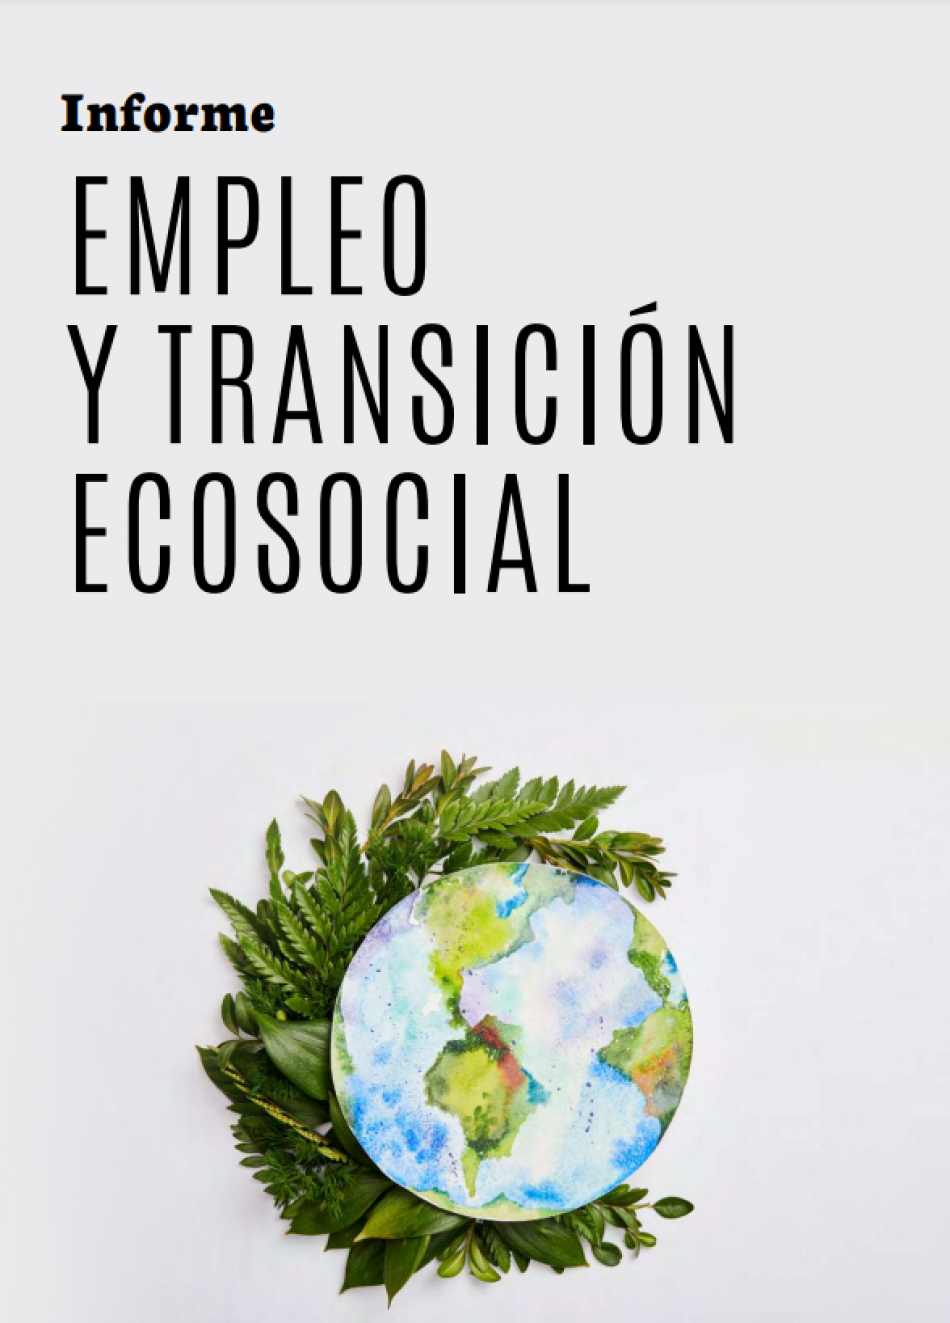 Organizaciones ecologistas y sindicales presentan propuestas concretas para la transición ecológica frente al modelo del Gobierno